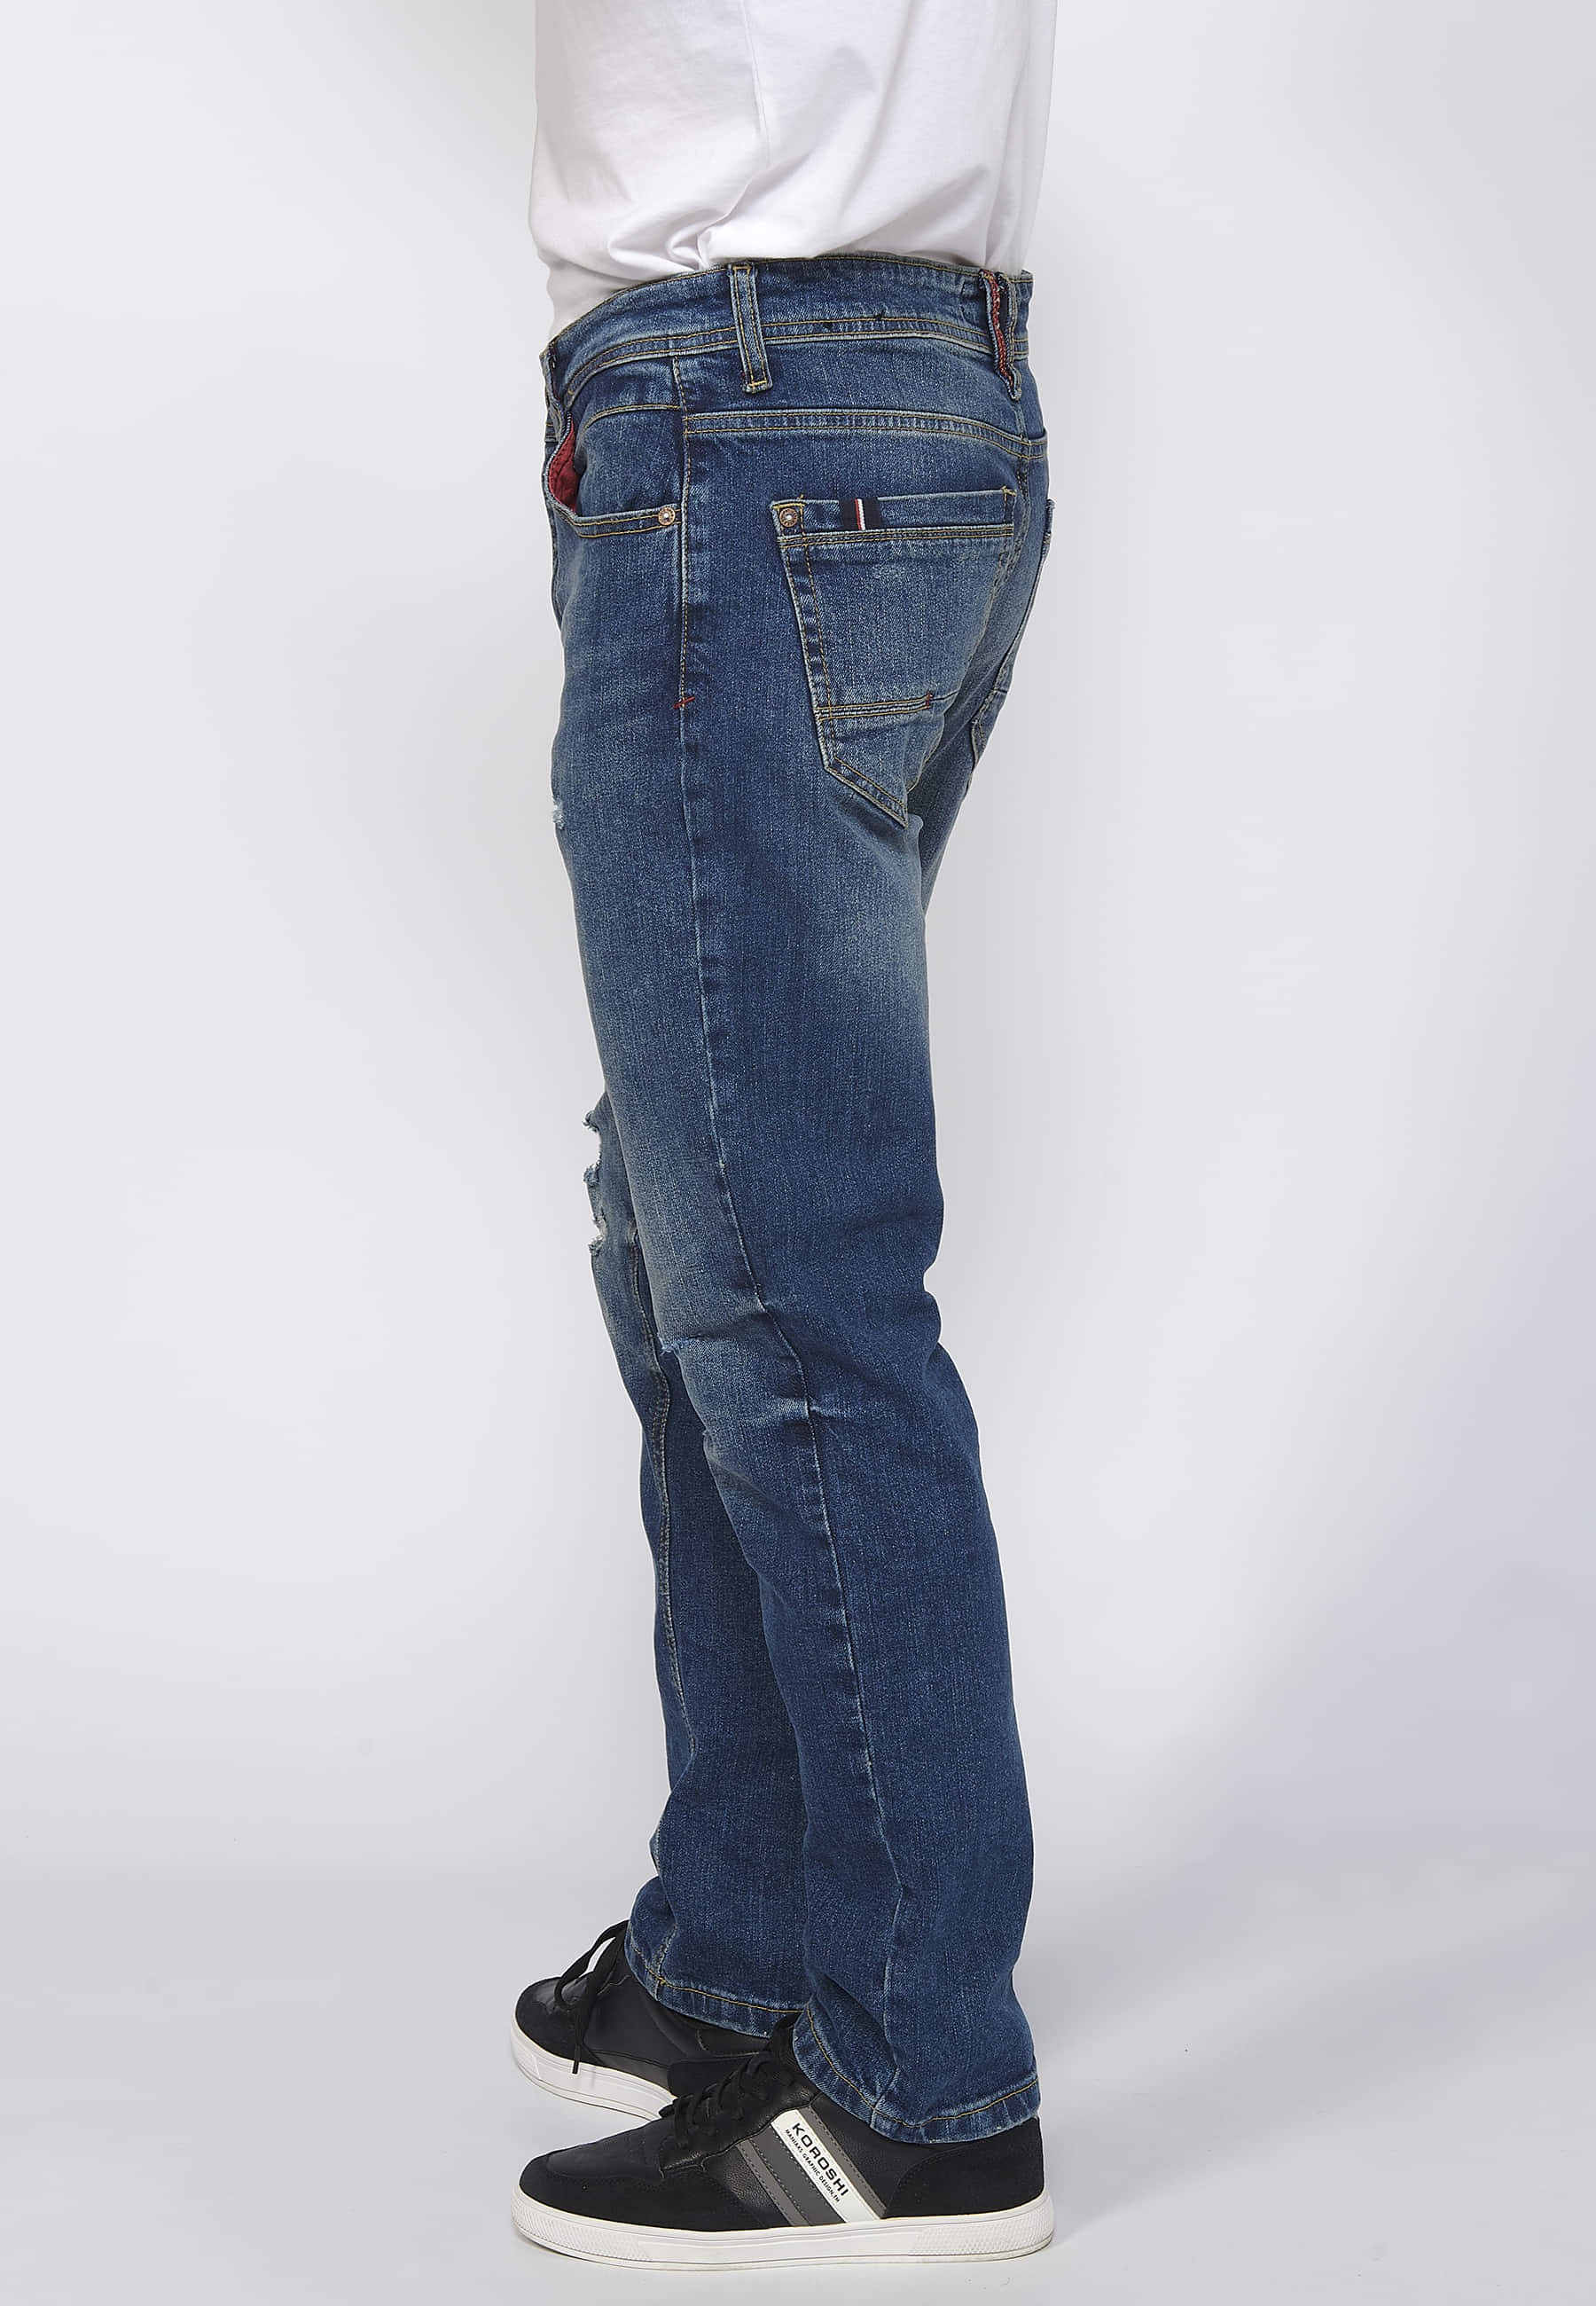 Pantalons llargs denim straigtht regular fit amb tancament davanter amb cremallera i botó color blau per a Home 8